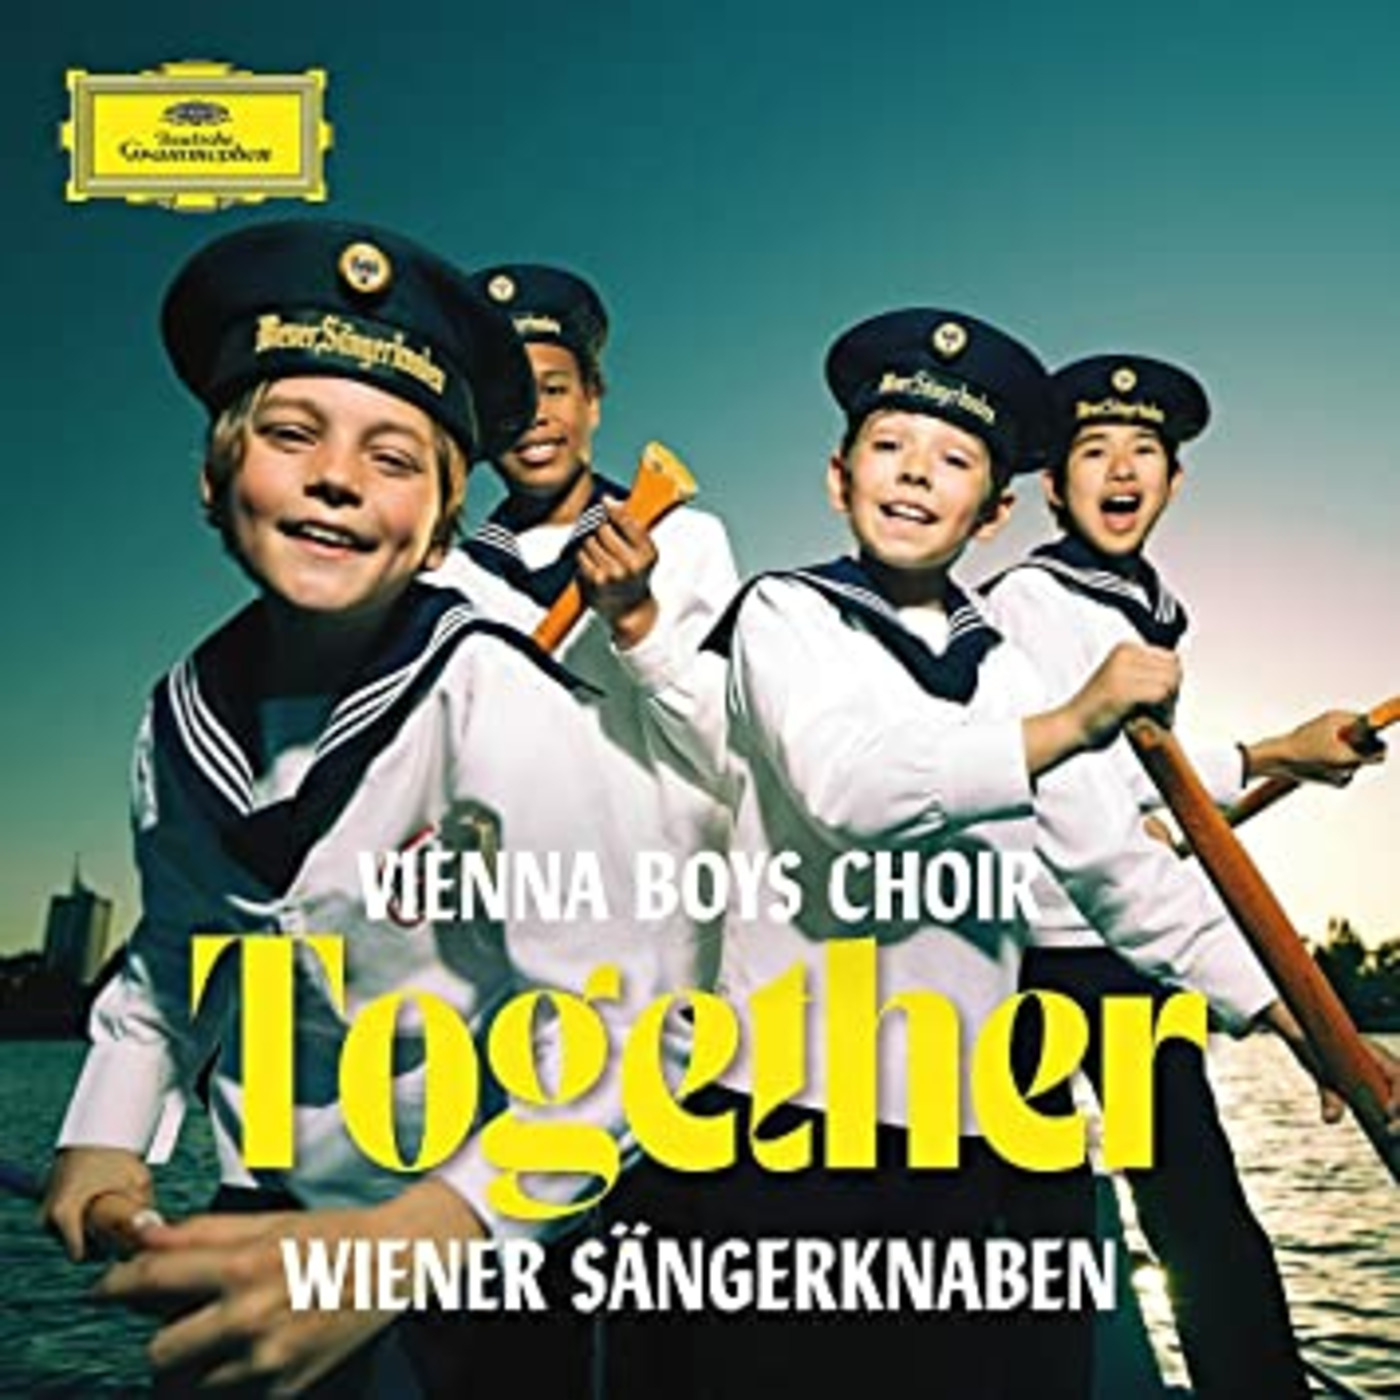 Episode 74: 18074 Vienna Boys' Choir - Together